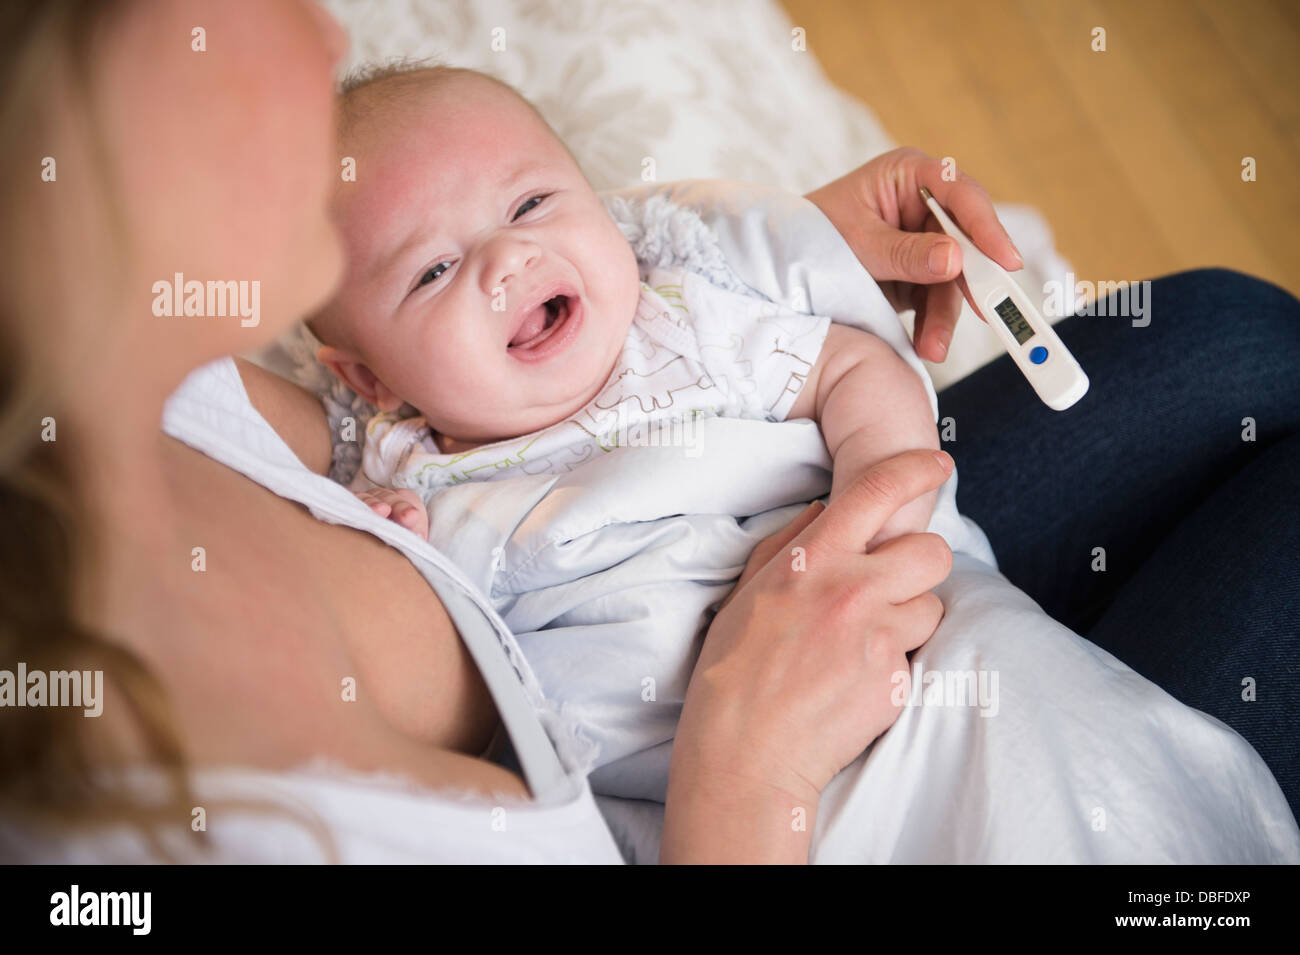 Mère de race blanche prendre la température du bébé qui pleure Banque D'Images